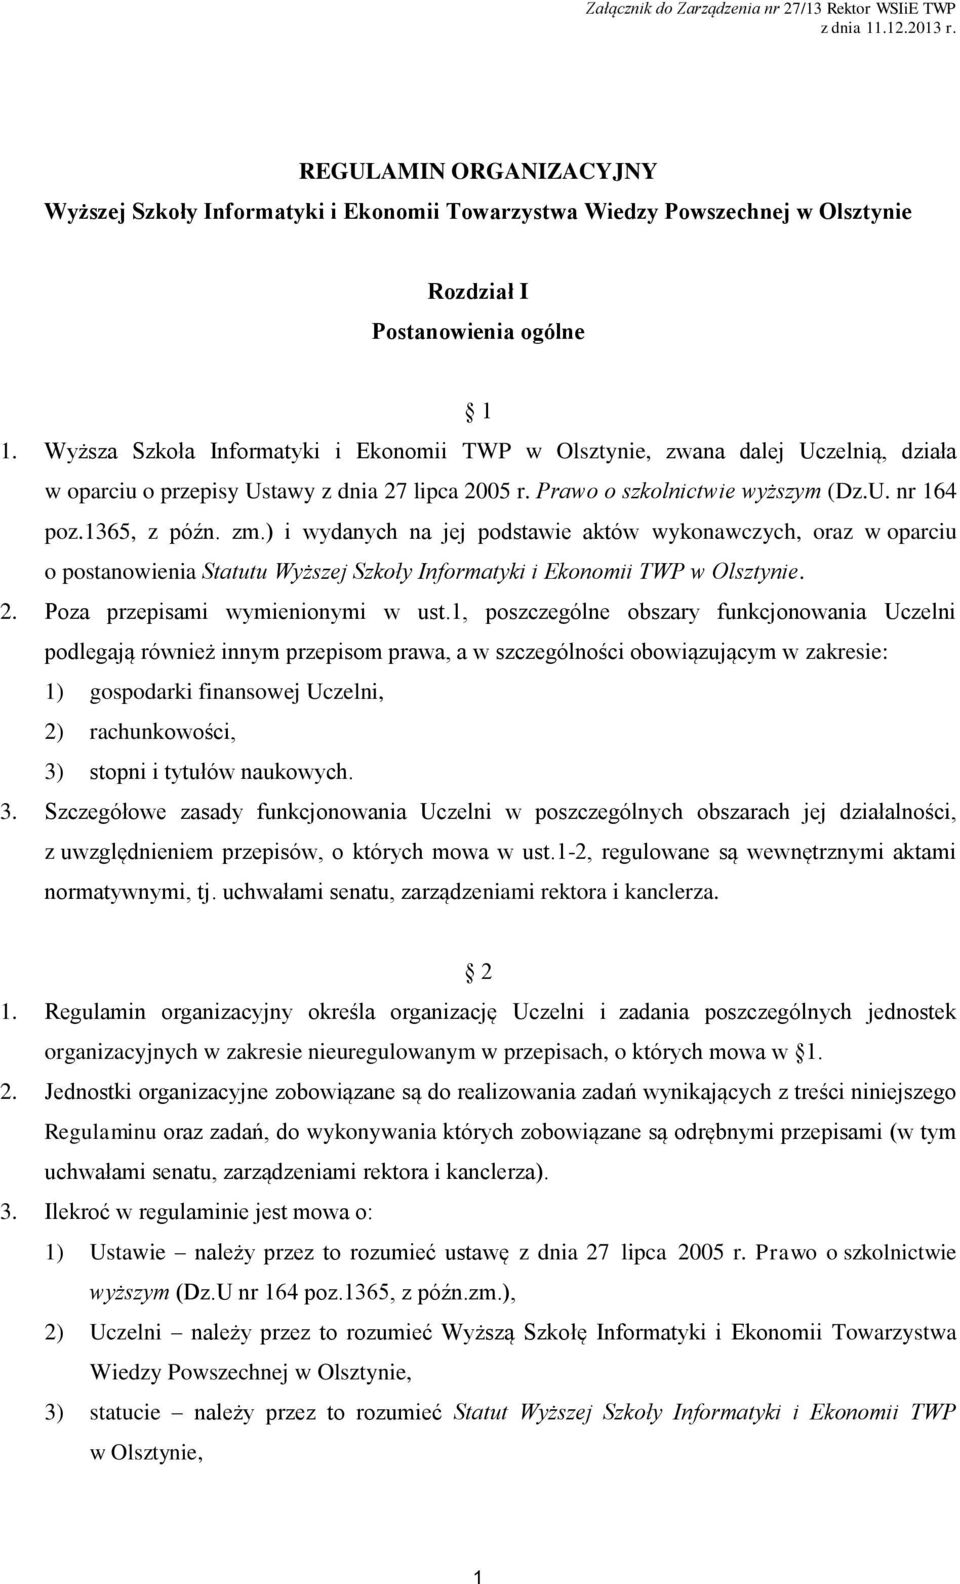 Wyższa Szkoła Informatyki i Ekonomii TWP w Olsztynie, zwana dalej Uczelnią, działa w oparciu o przepisy Ustawy z dnia 27 lipca 2005 r. Prawo o szkolnictwie wyższym (Dz.U. nr 164 poz.1365, z późn. zm.